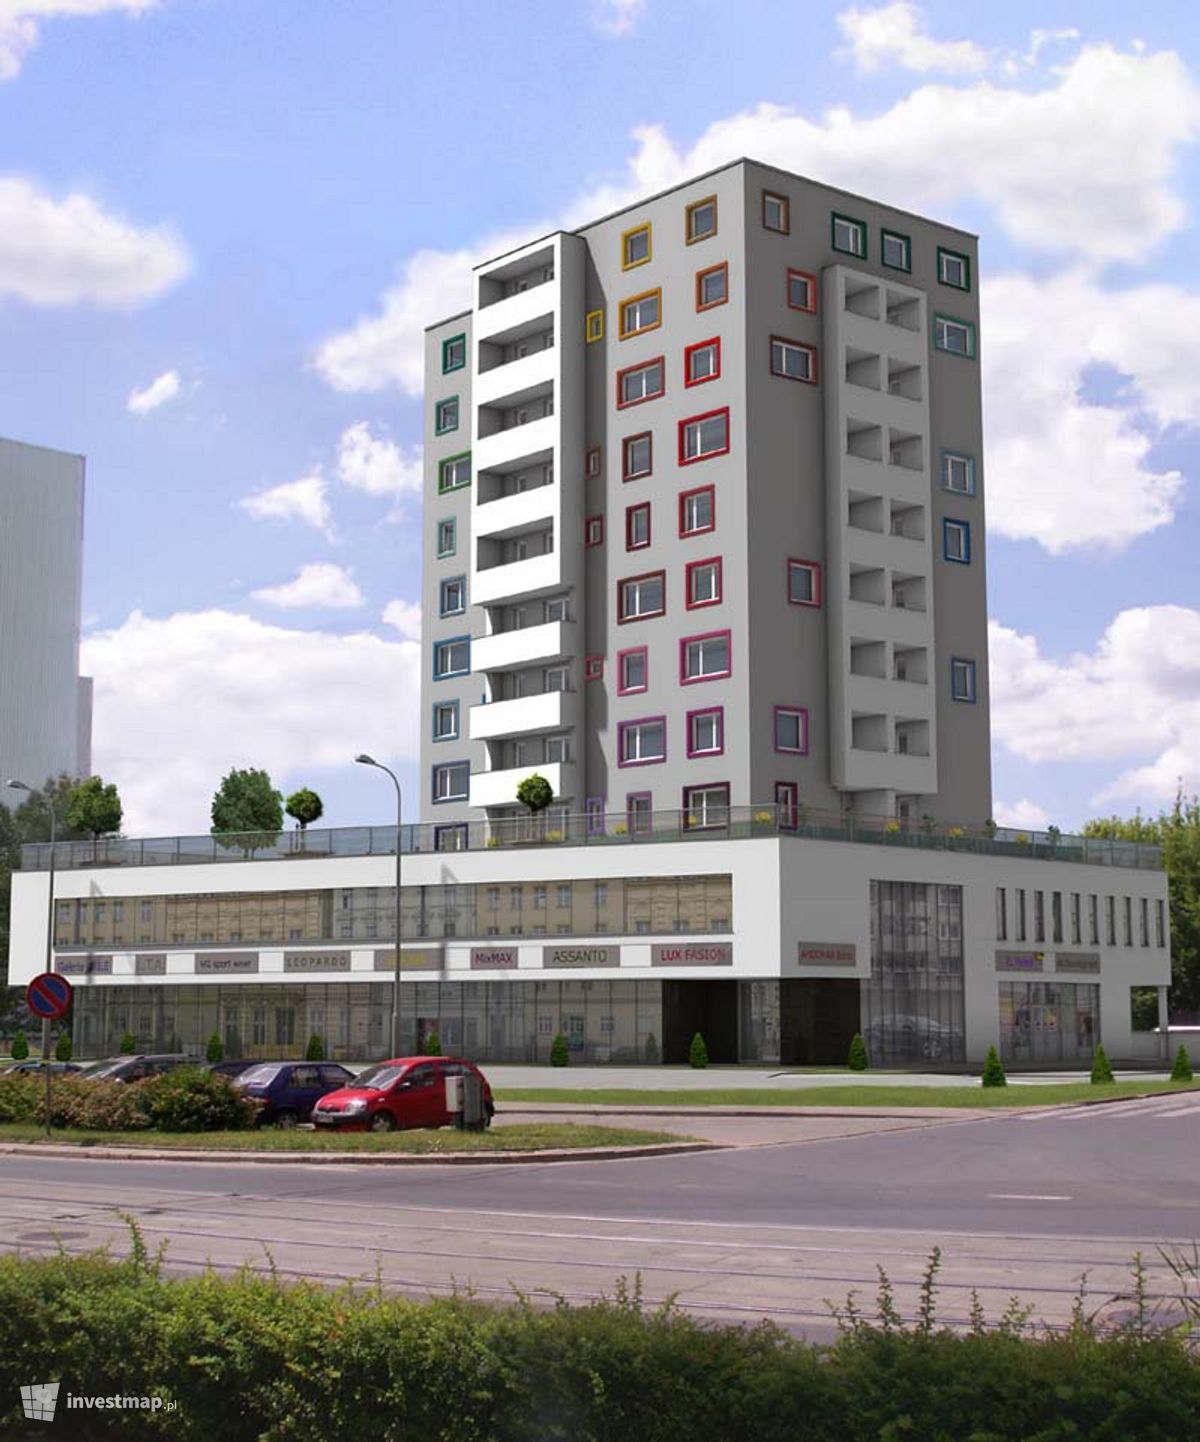 Wizualizacja [Wrocław] Budynek wielorodzinny "Hubska" dodał Jan Hawełko 